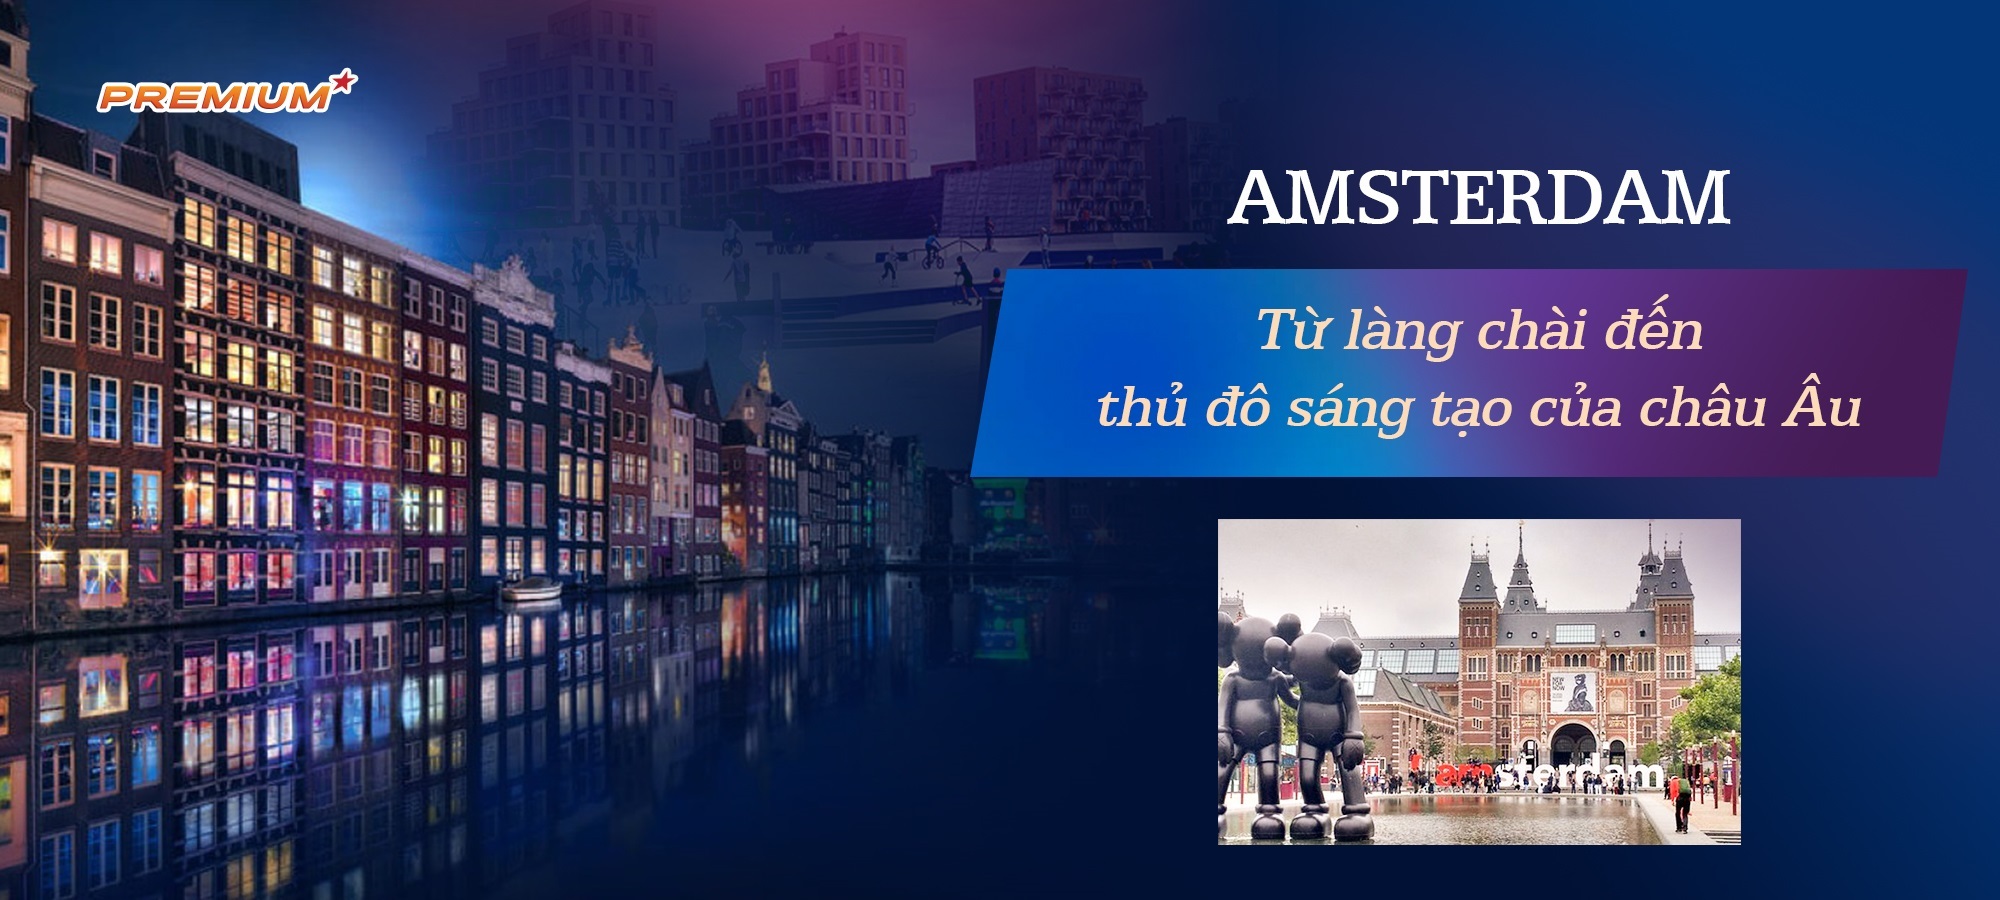 Amsterdam: Từ làng chài đến thủ đô sáng tạo của châu Âu